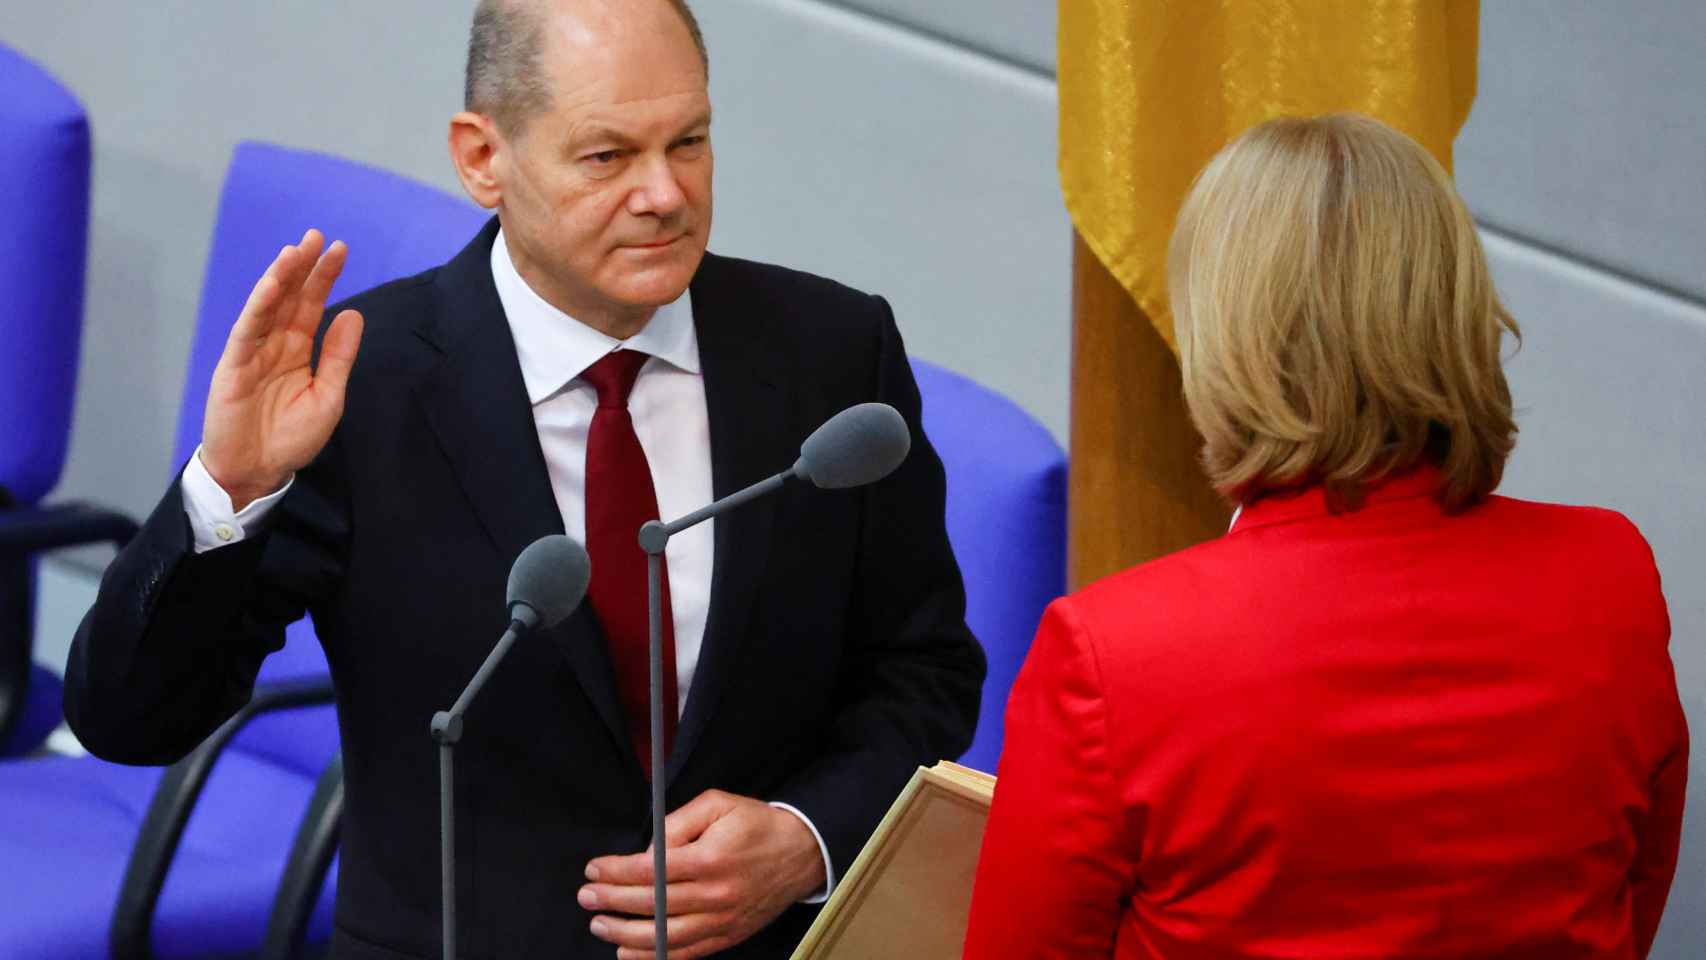 Olaf Scholz sucede a Angela Merkel y es elegido canciller federal por el  Parlamento alemán